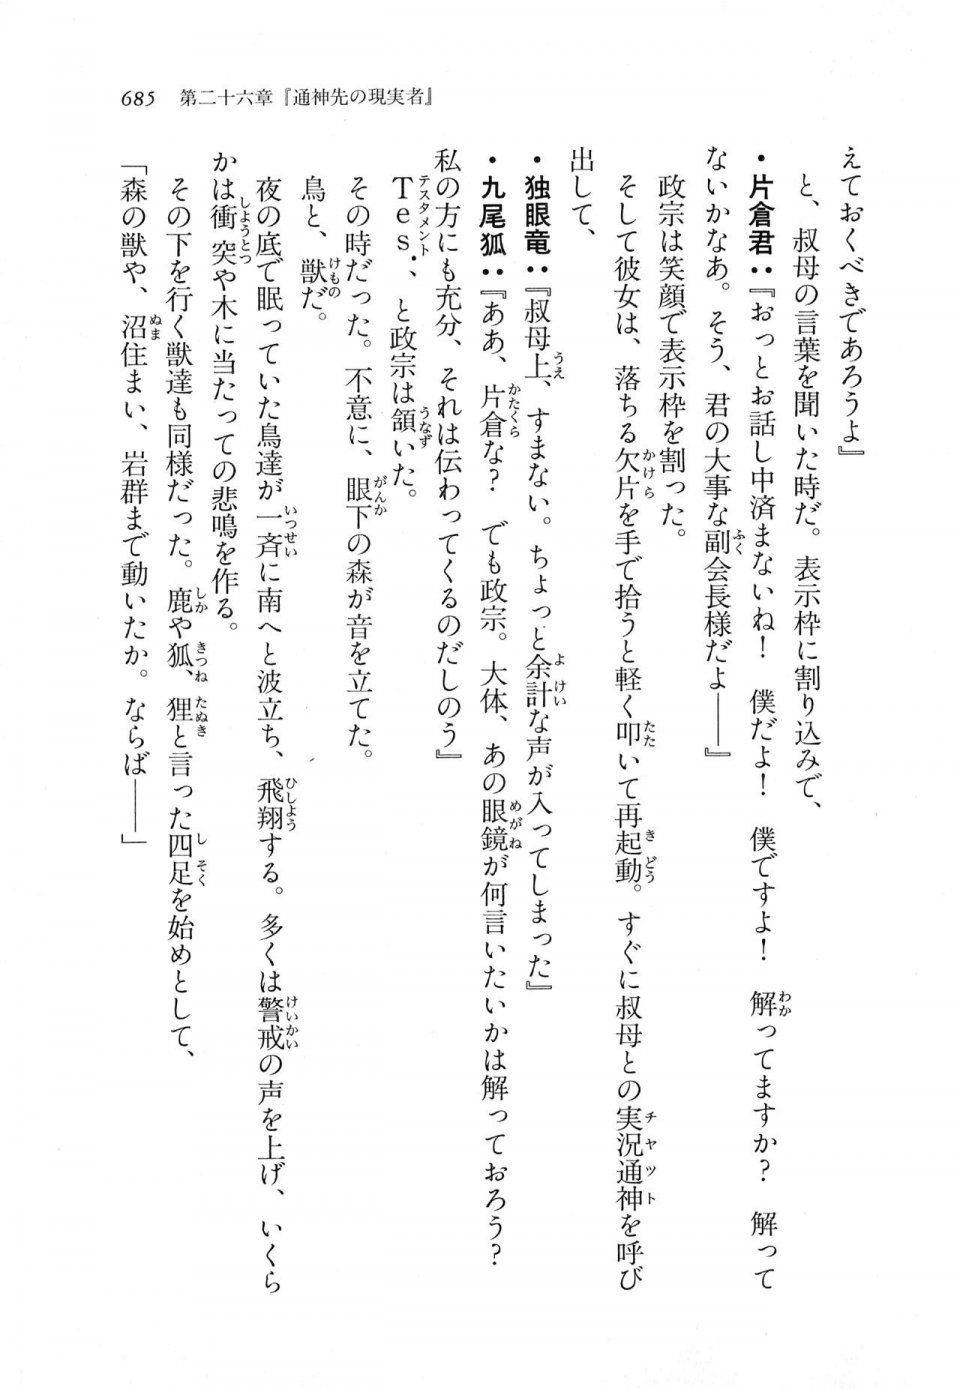 Kyoukai Senjou no Horizon LN Vol 11(5A) - Photo #685